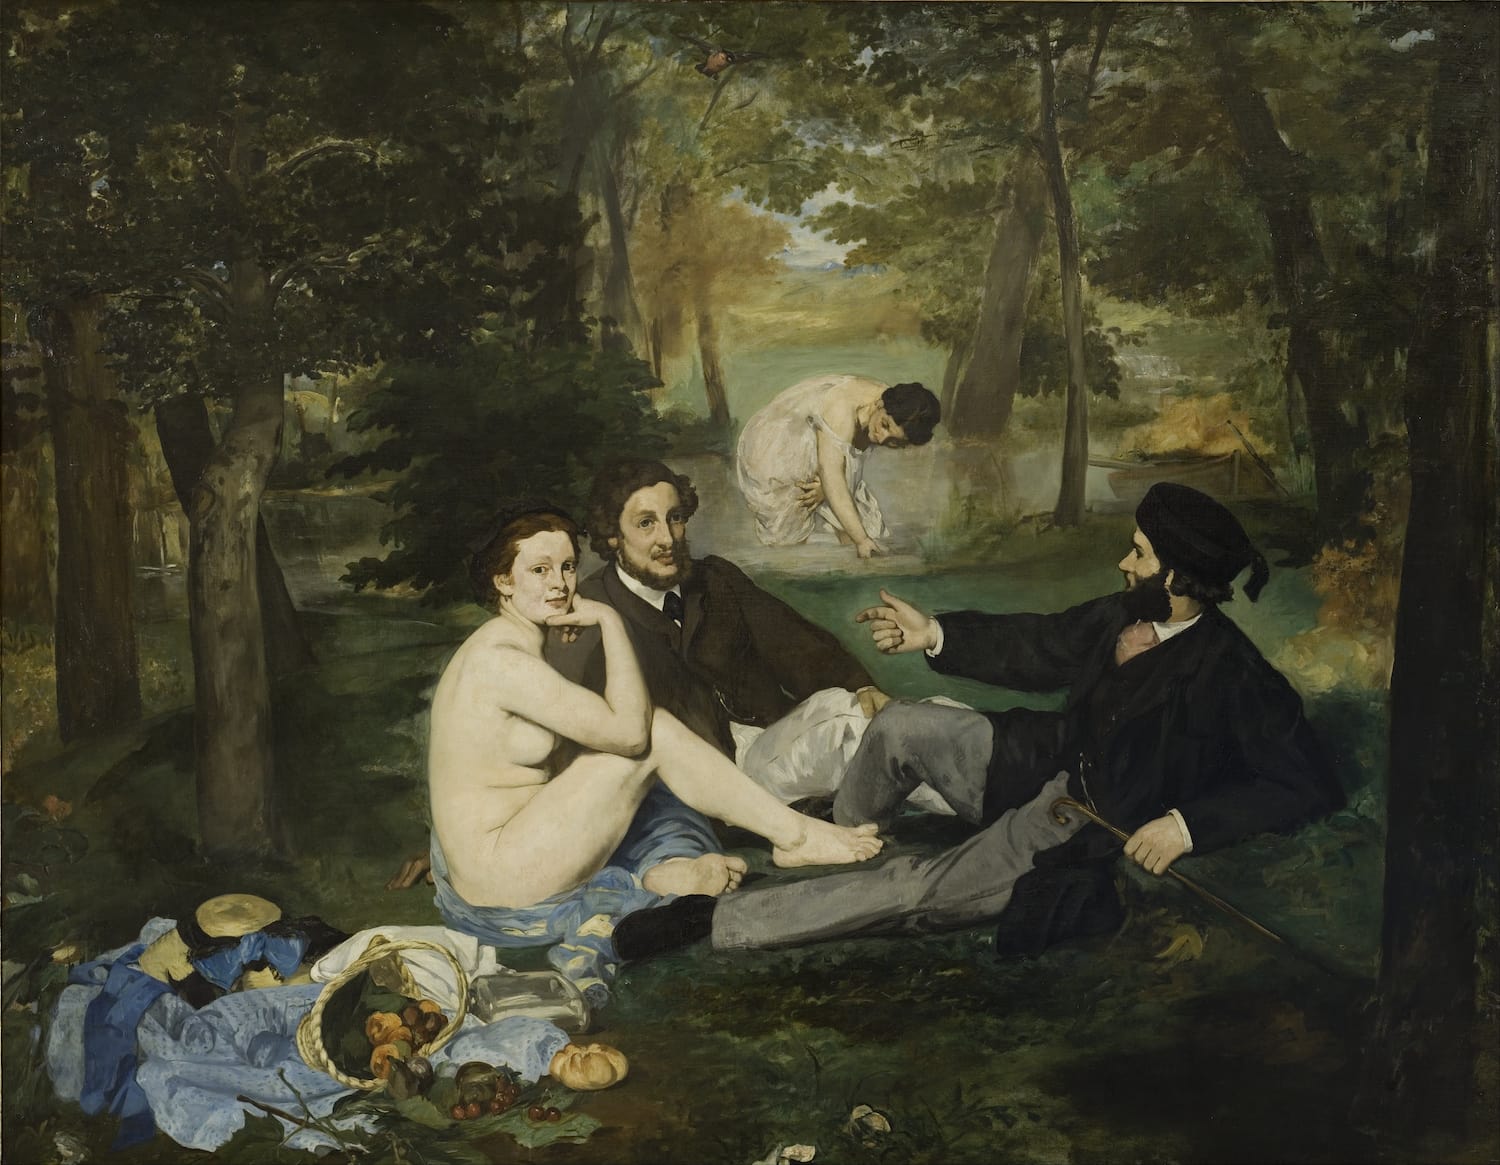 Édouard Manet, Das Frühstück im Grünen, 1863